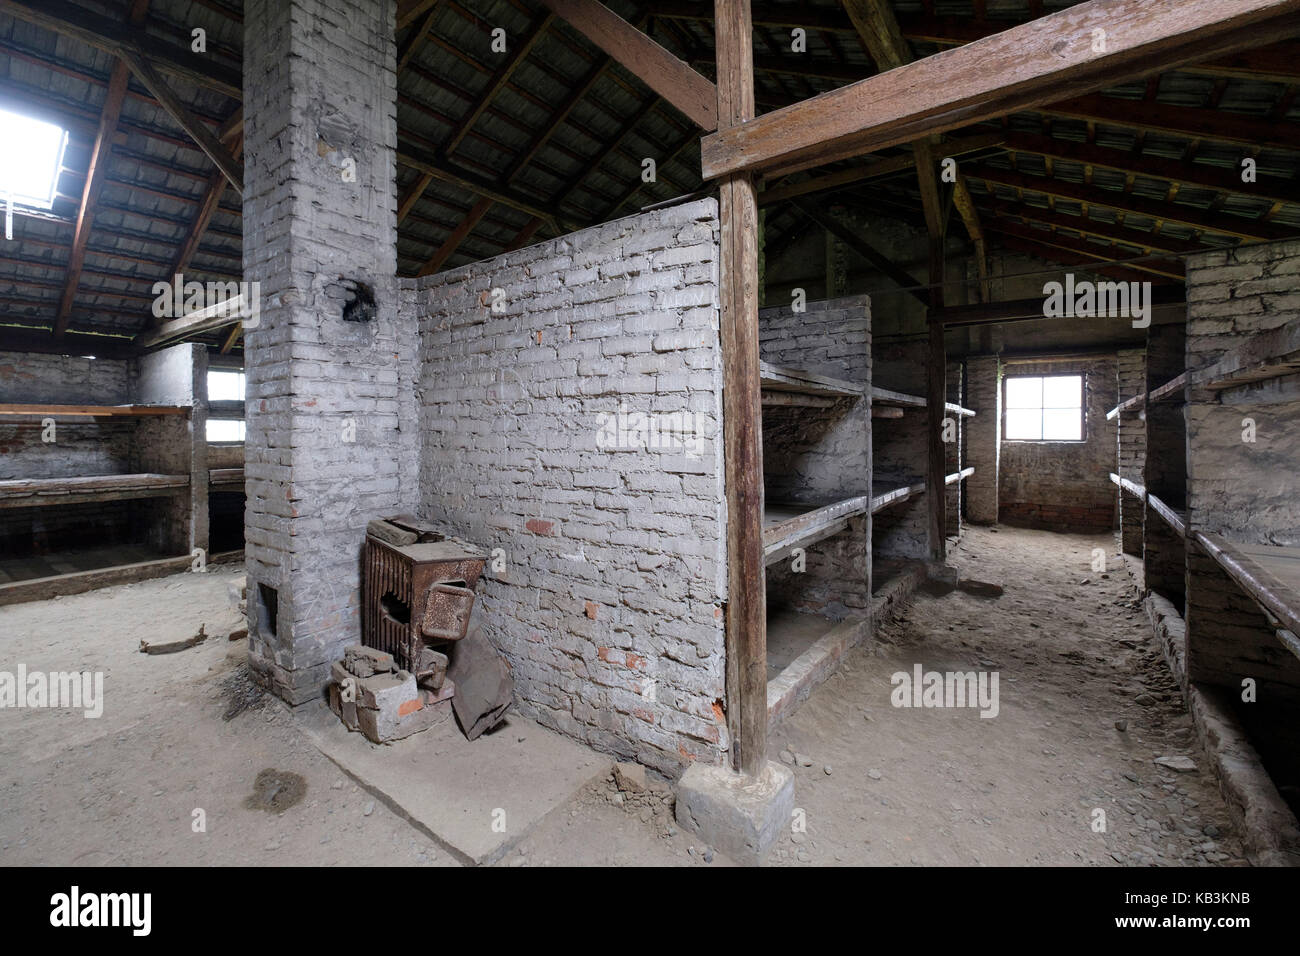 Caserne des prisonniers à Auschwitz II Birkenau camp de concentration nazi de la DEUXIÈME GUERRE MONDIALE, Pologne Banque D'Images